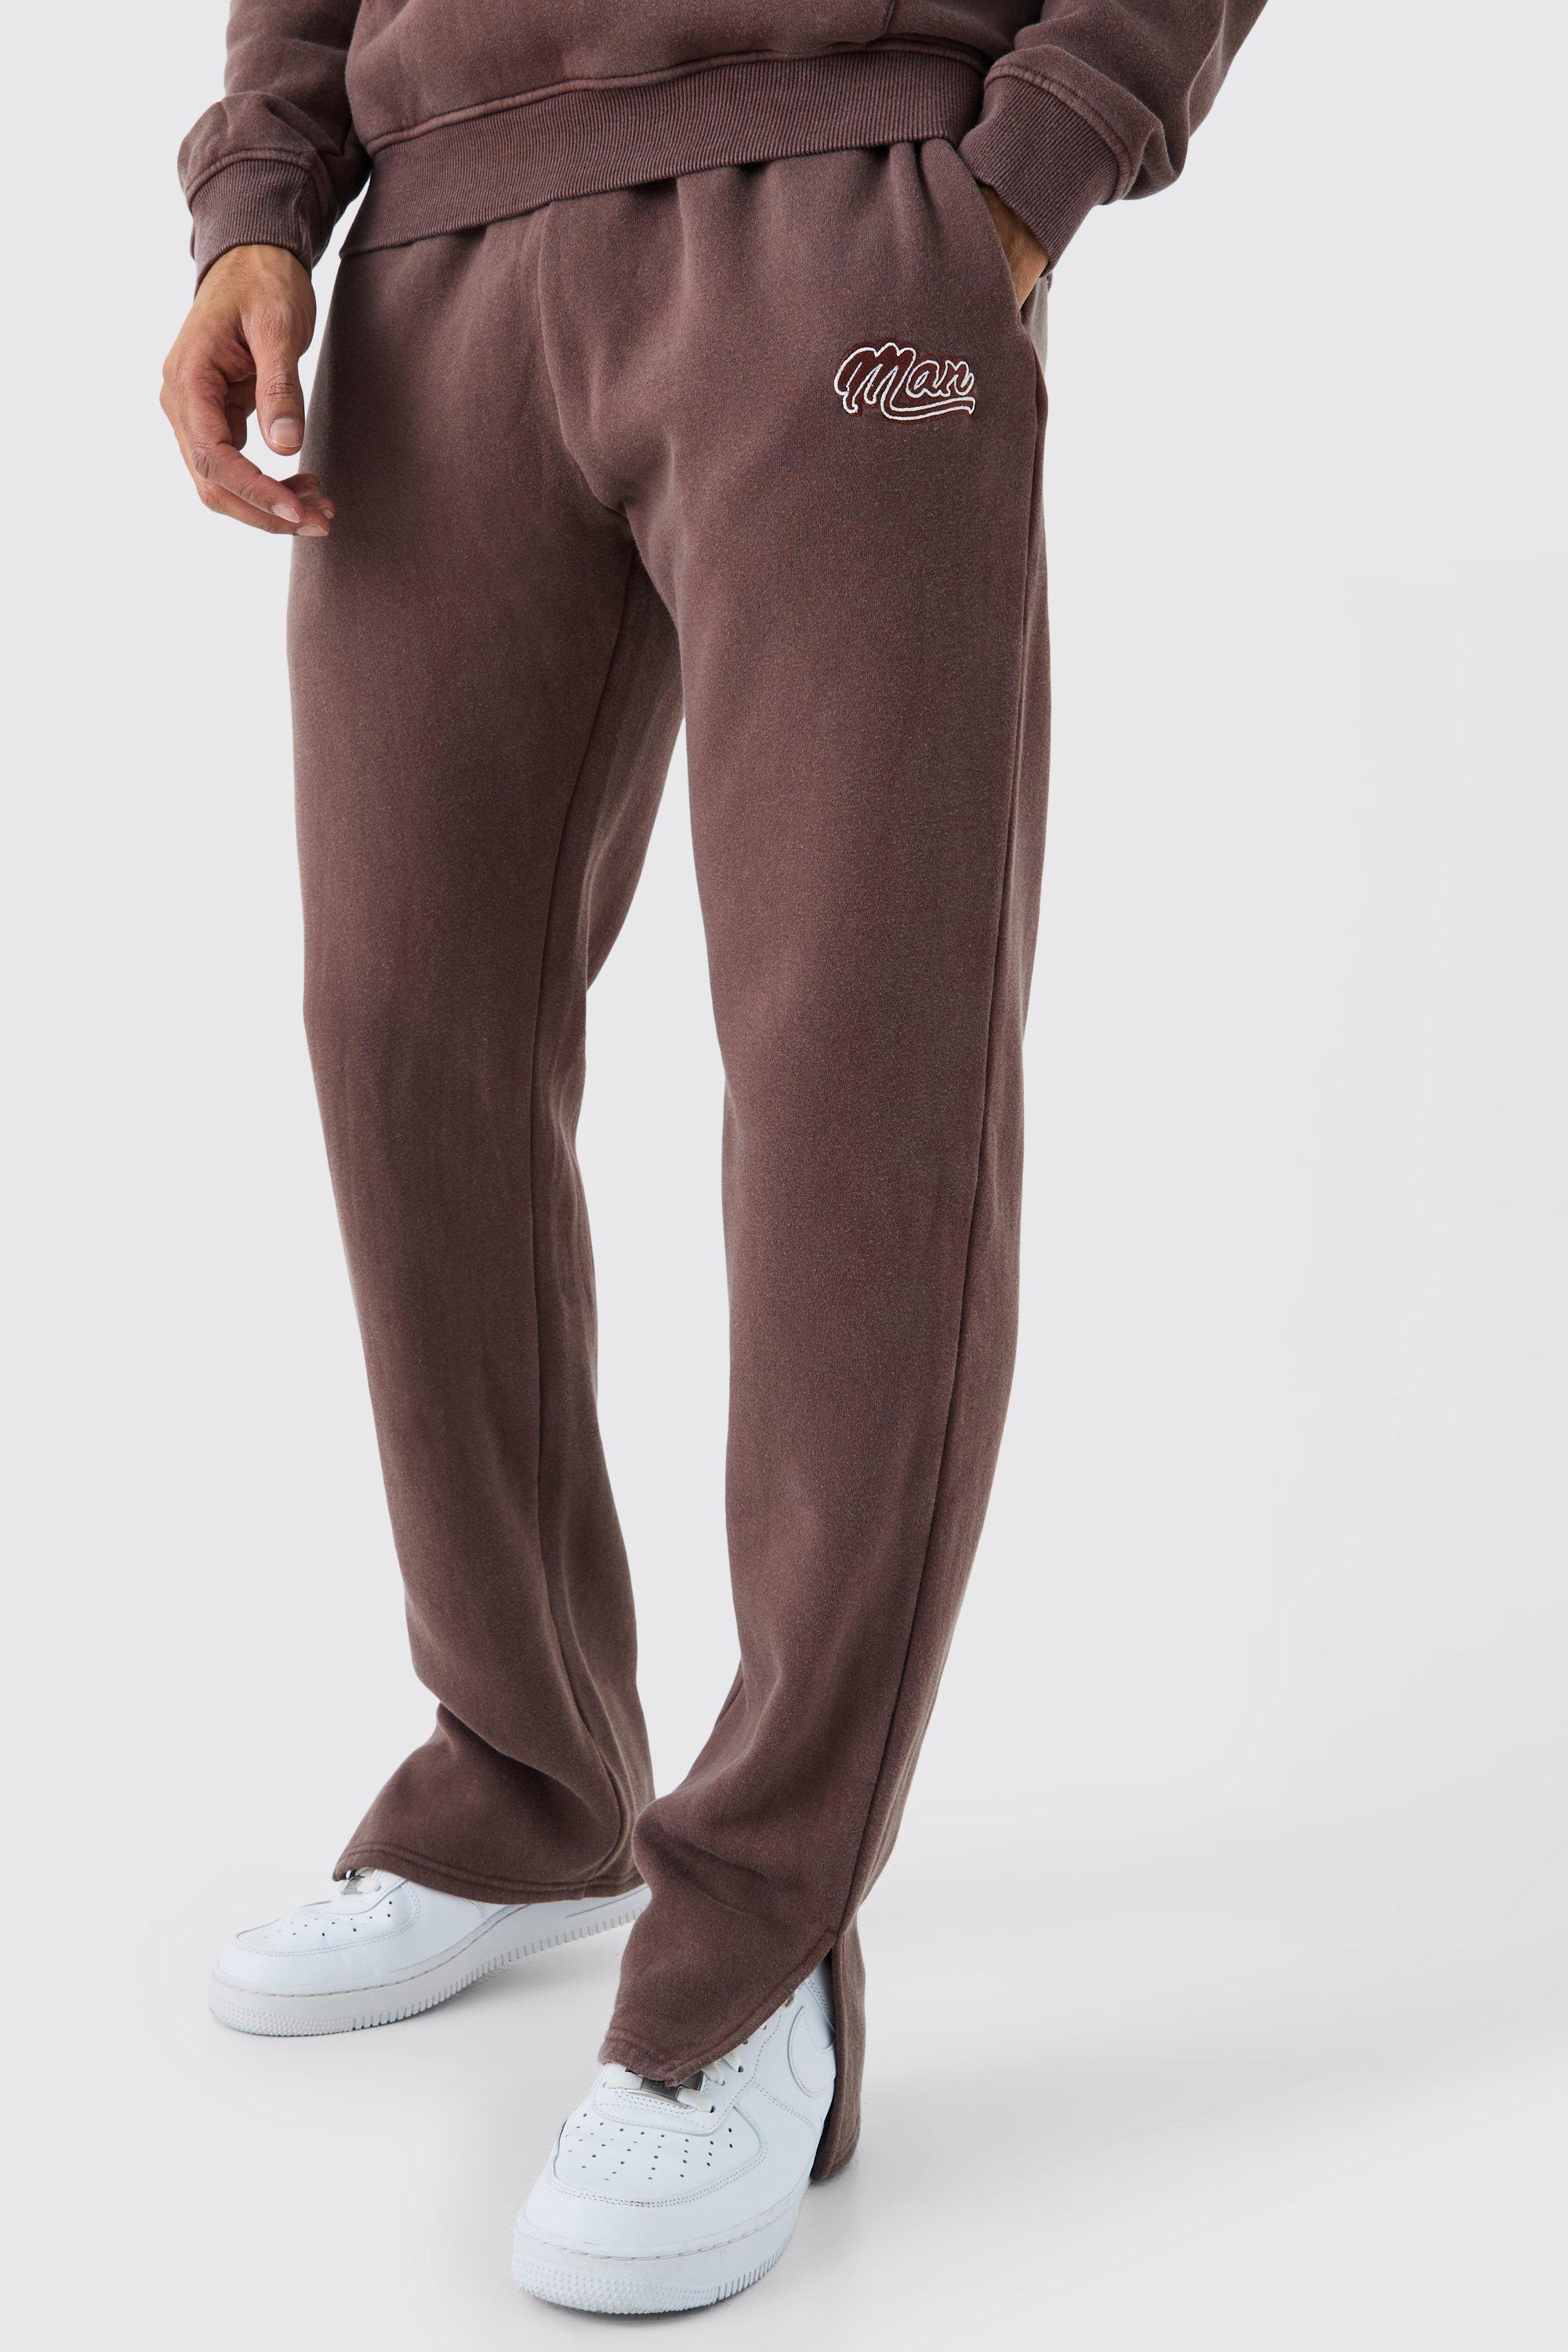 Image of Pantaloni tuta Man Fit slavati con spacco sul fondo, Brown